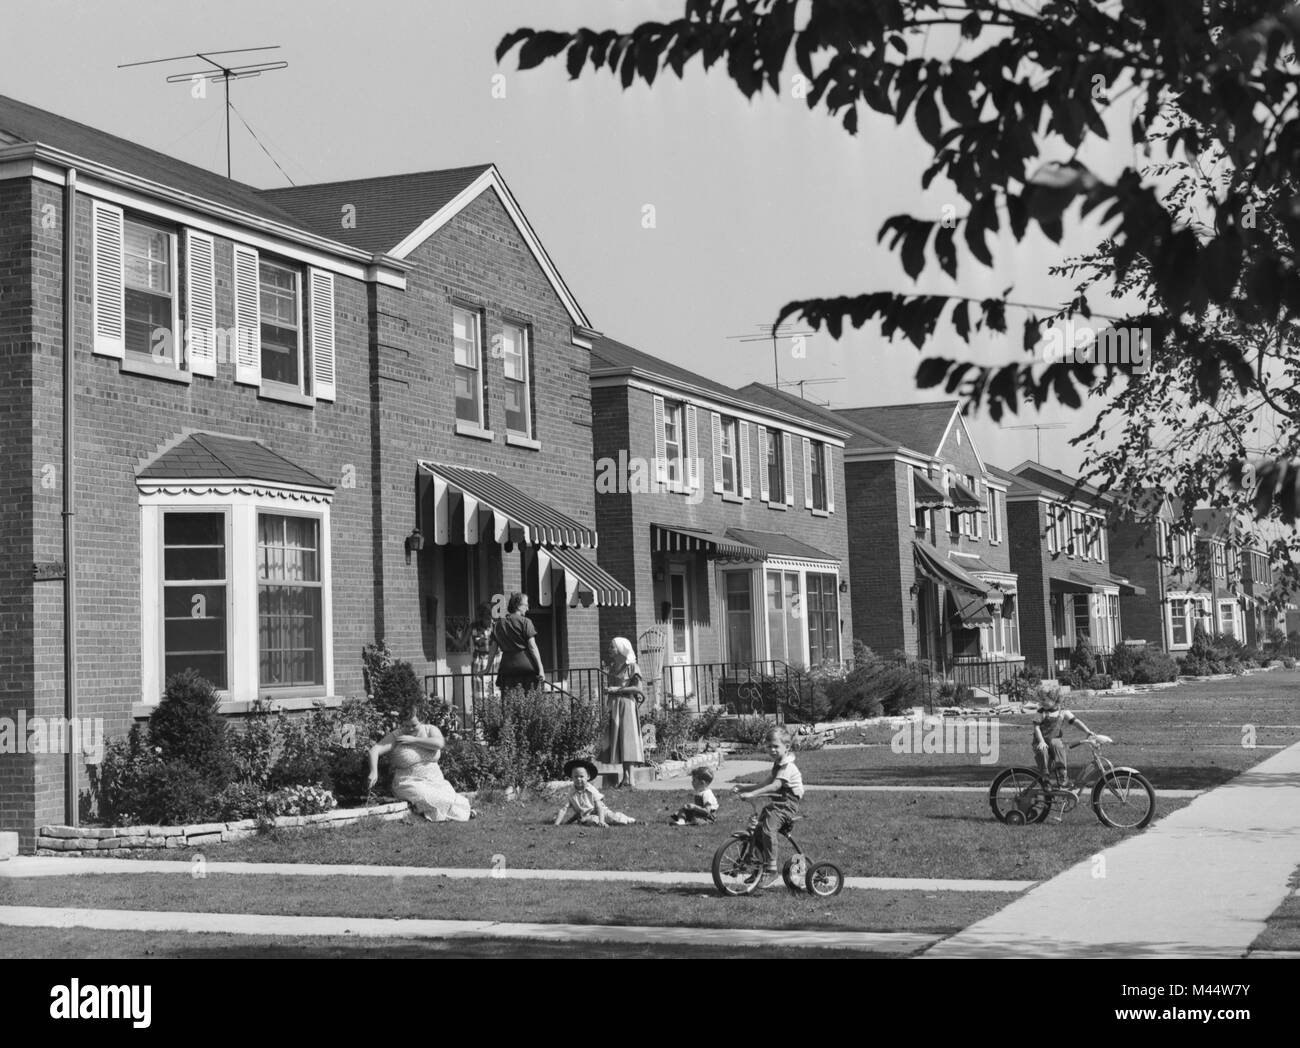 Une scène nationale sur le bloc 5200 de West Van Buren Ave. dans le désormais tous les côté ouest quartier afro-américain de Chicago, Austin ca 1954. Banque D'Images